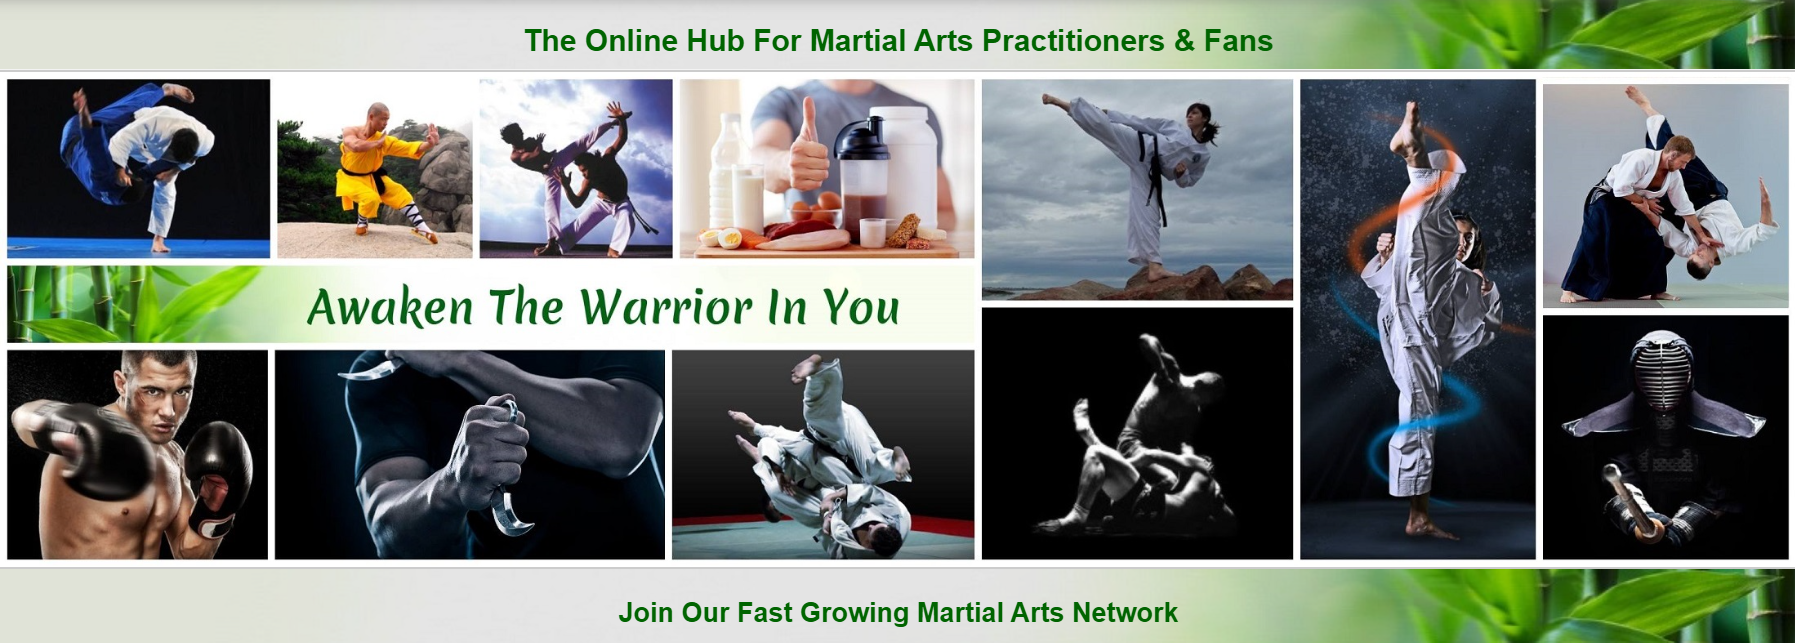 martial arts, combat sports online social network community